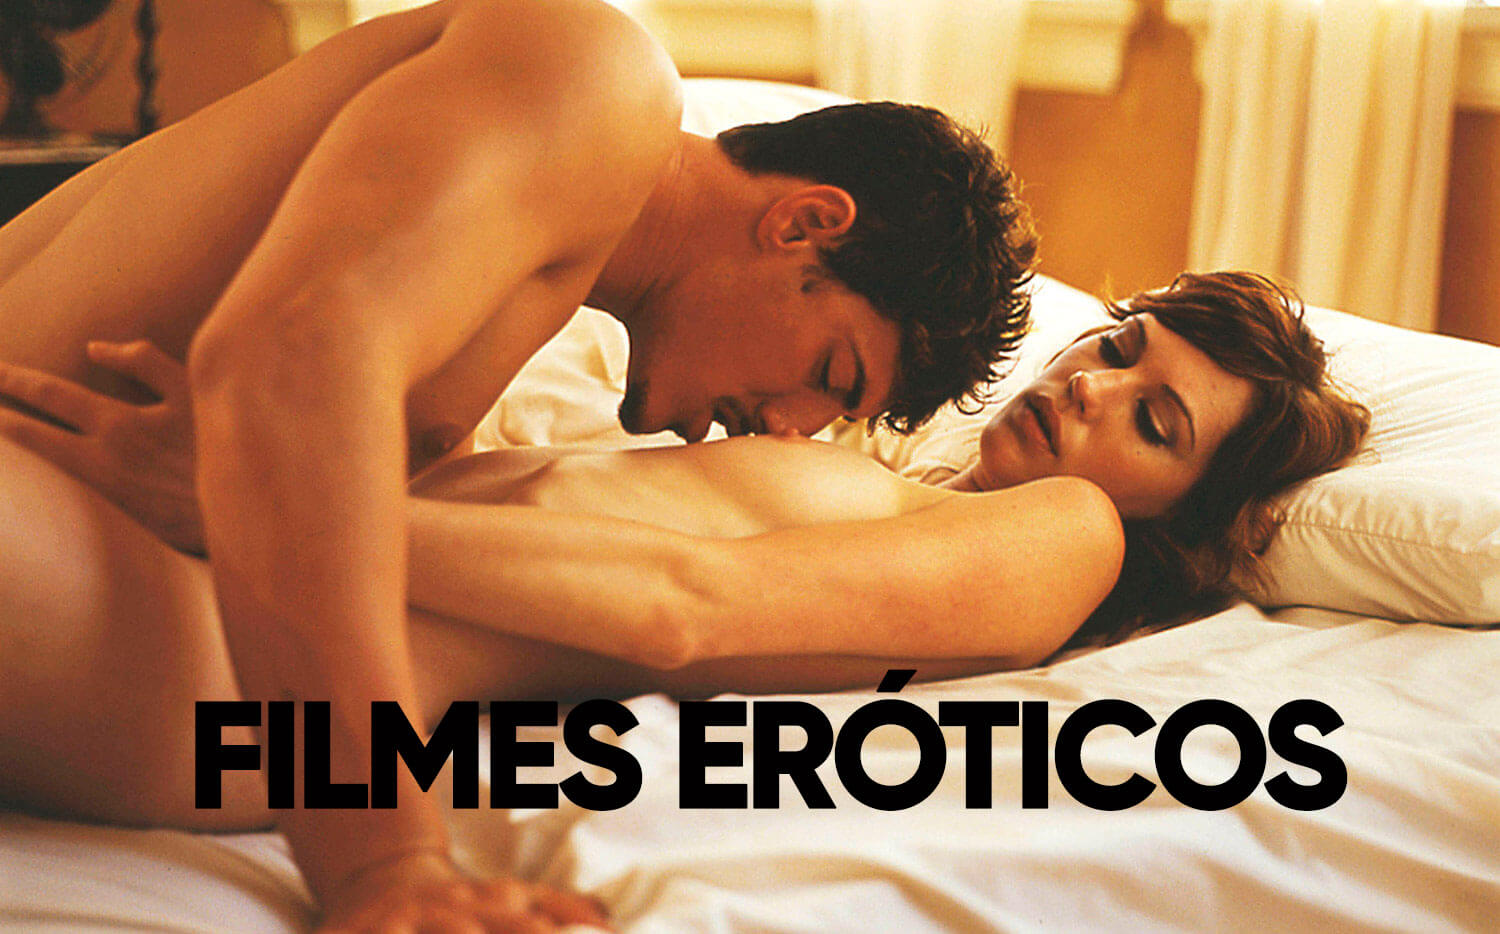 Filmes Eroticos Online Gratis